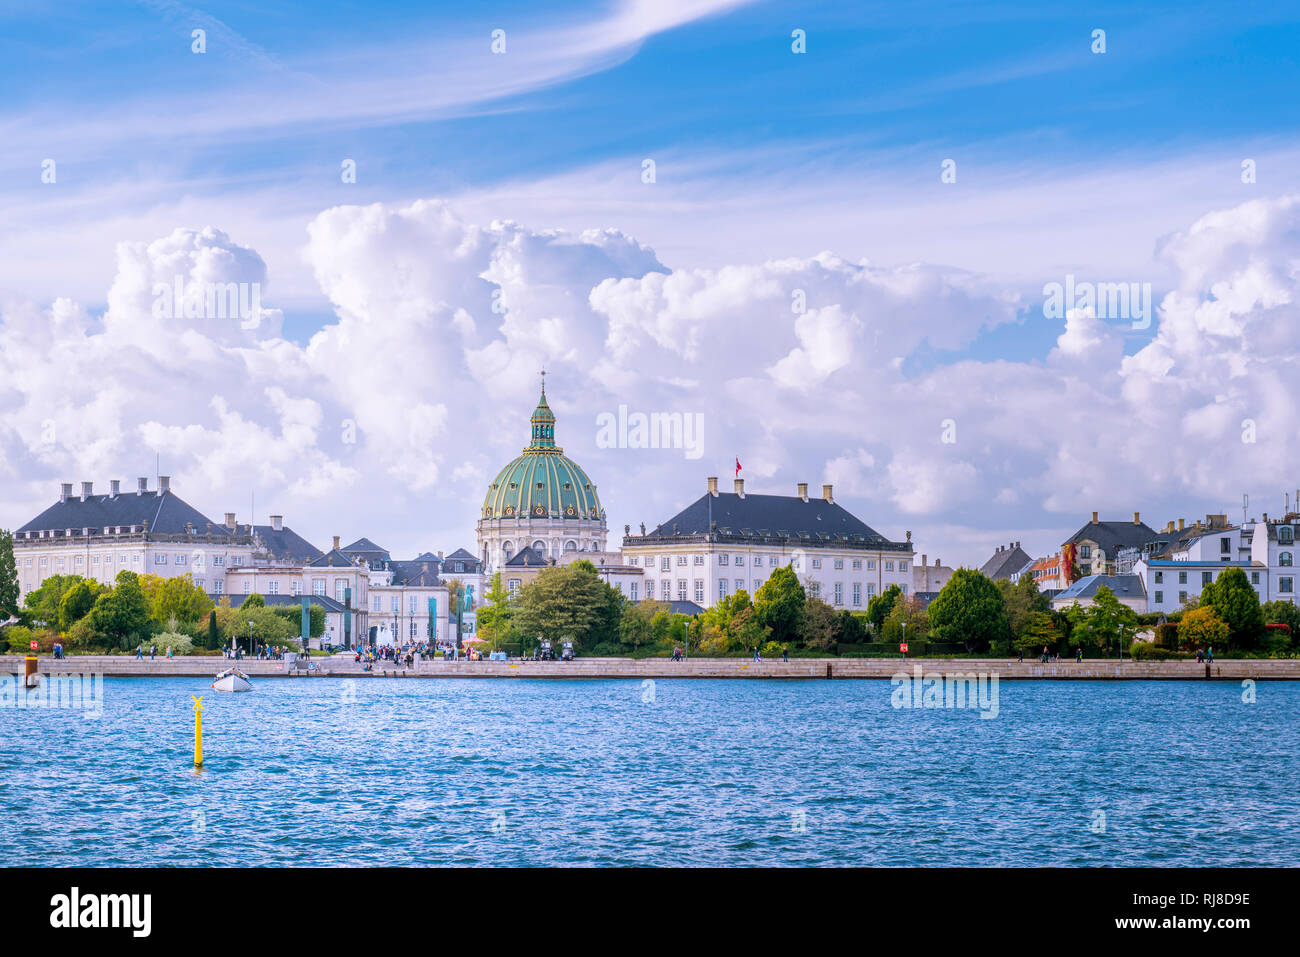 Europa, Dänemark, Kopenhagen, Schloss Amalienborg, Marmorkirche Stock Photo